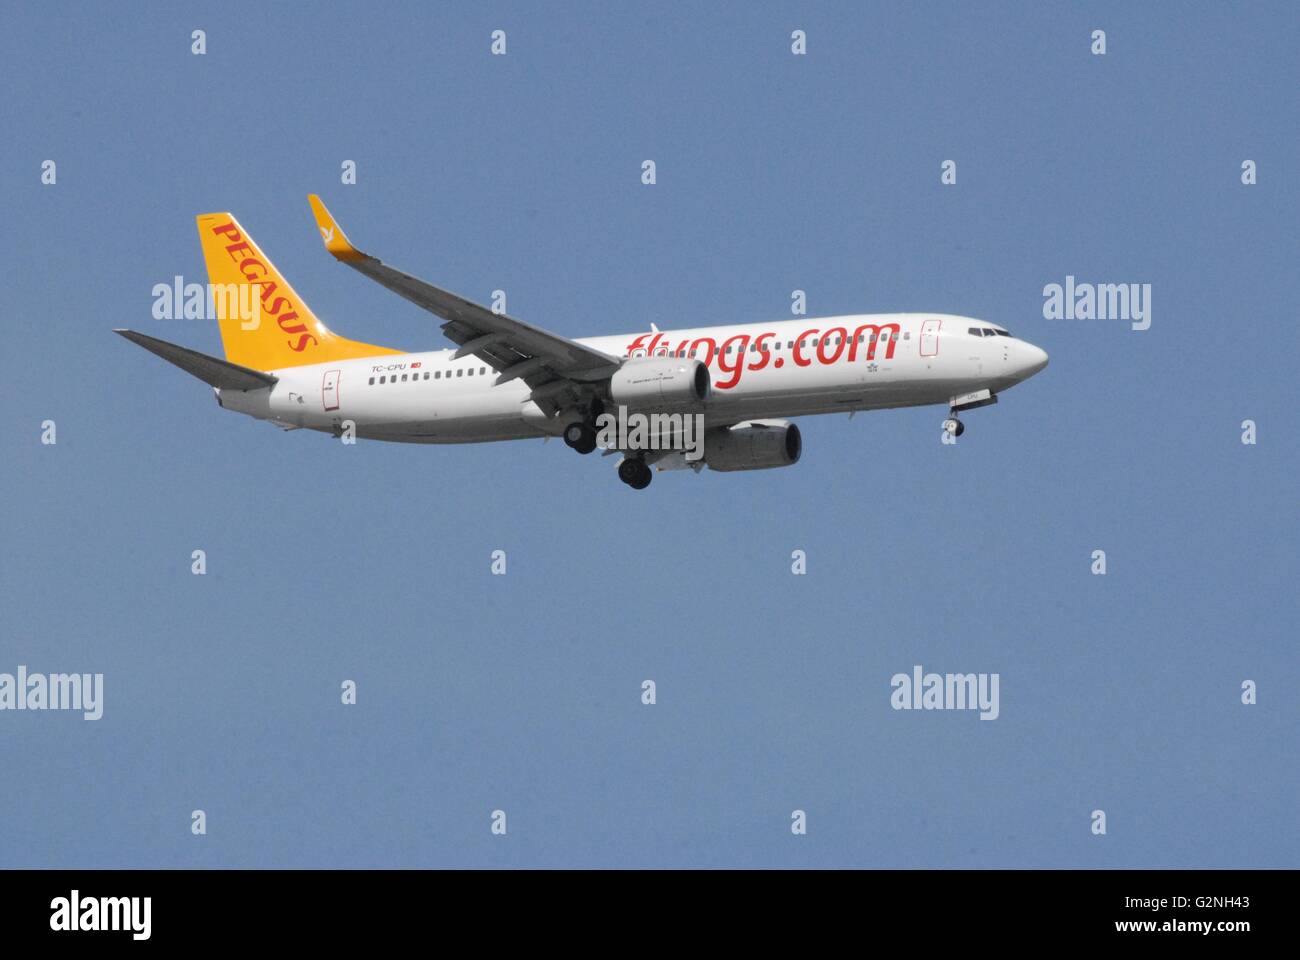 Pegasus Airlines Boeing 737-800 aeromobile durante l'approccio alla dall'Aeroporto Adnan Menderes Foto Stock